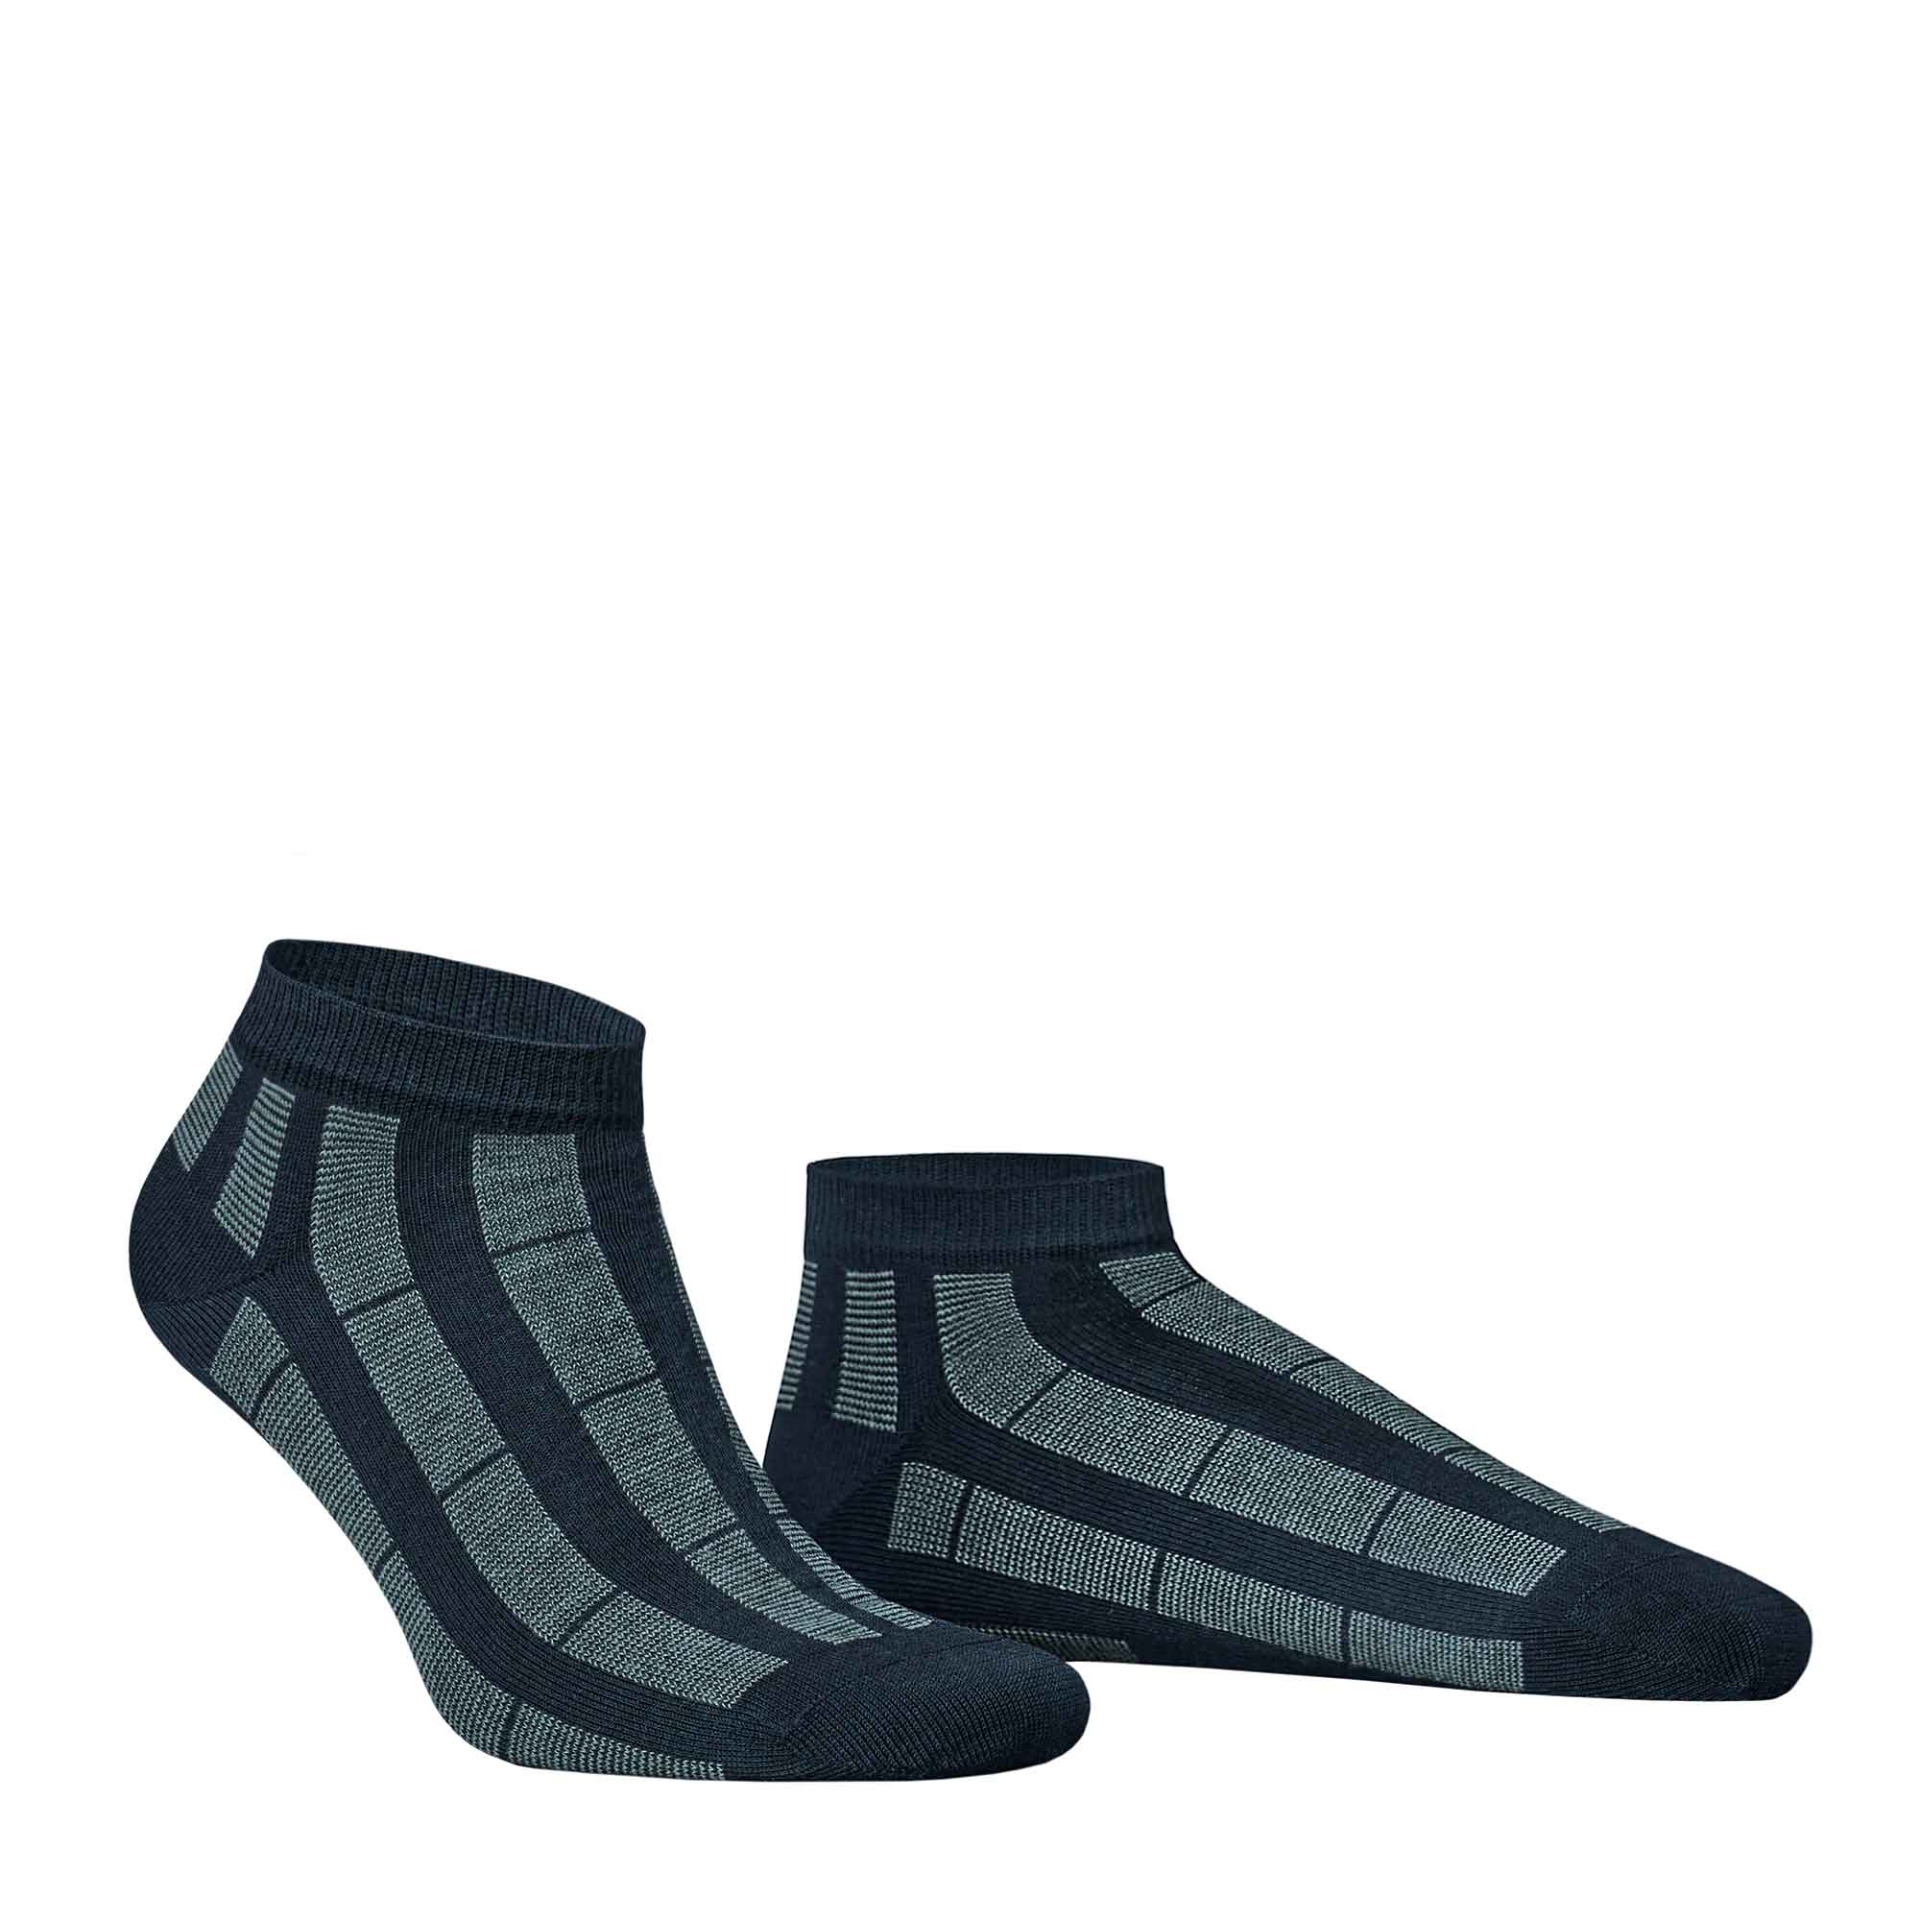 HUDSON Herren PIN -  39/42 - Sneaker Socken mit Streifen-Muster - Marine (Blau)